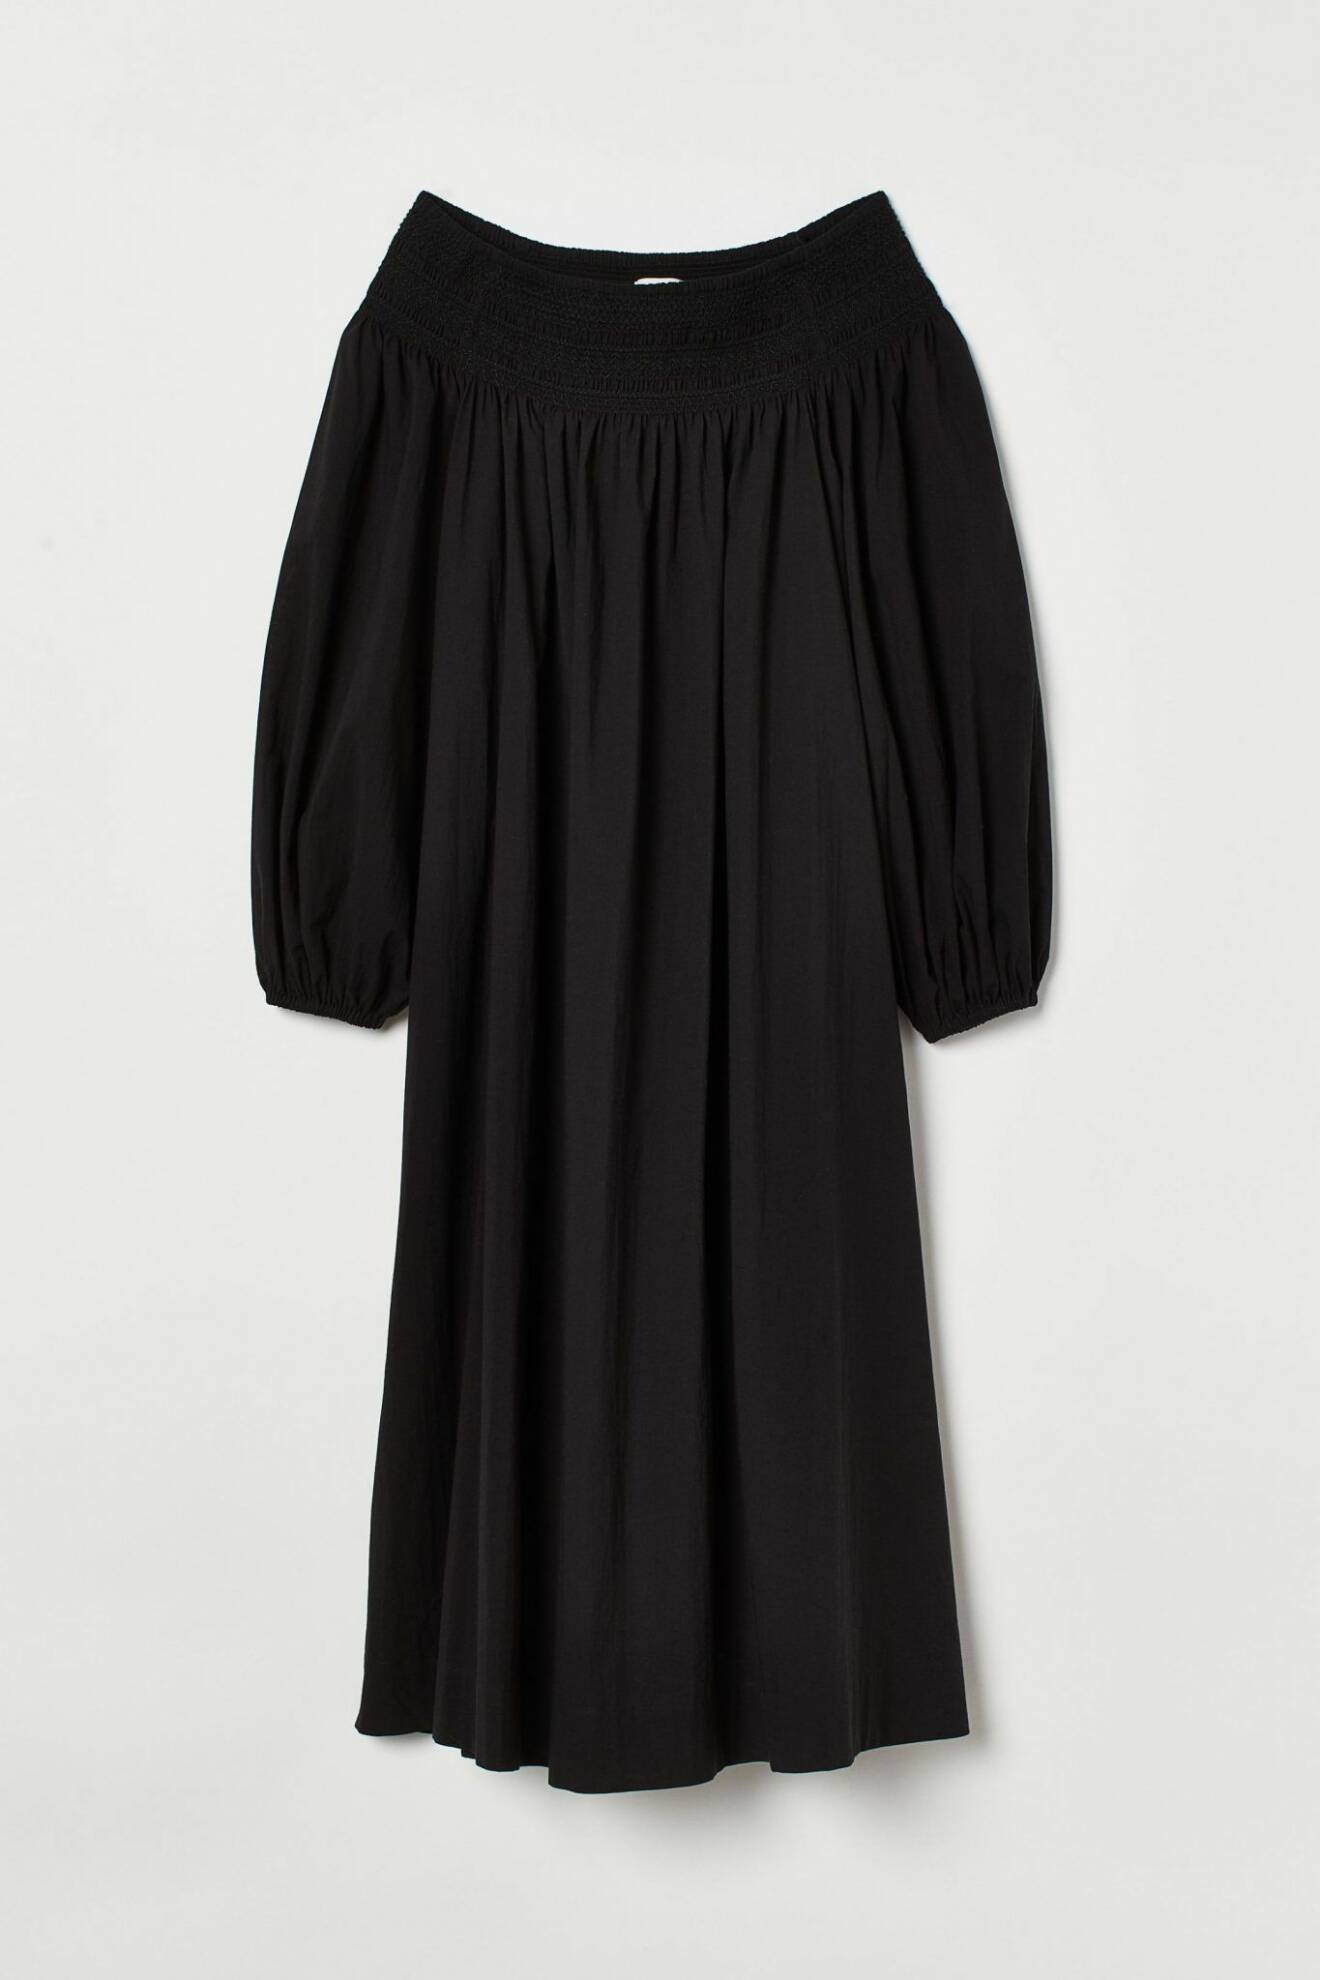 Svart klänning från H&M i en modell med off-shoulder.